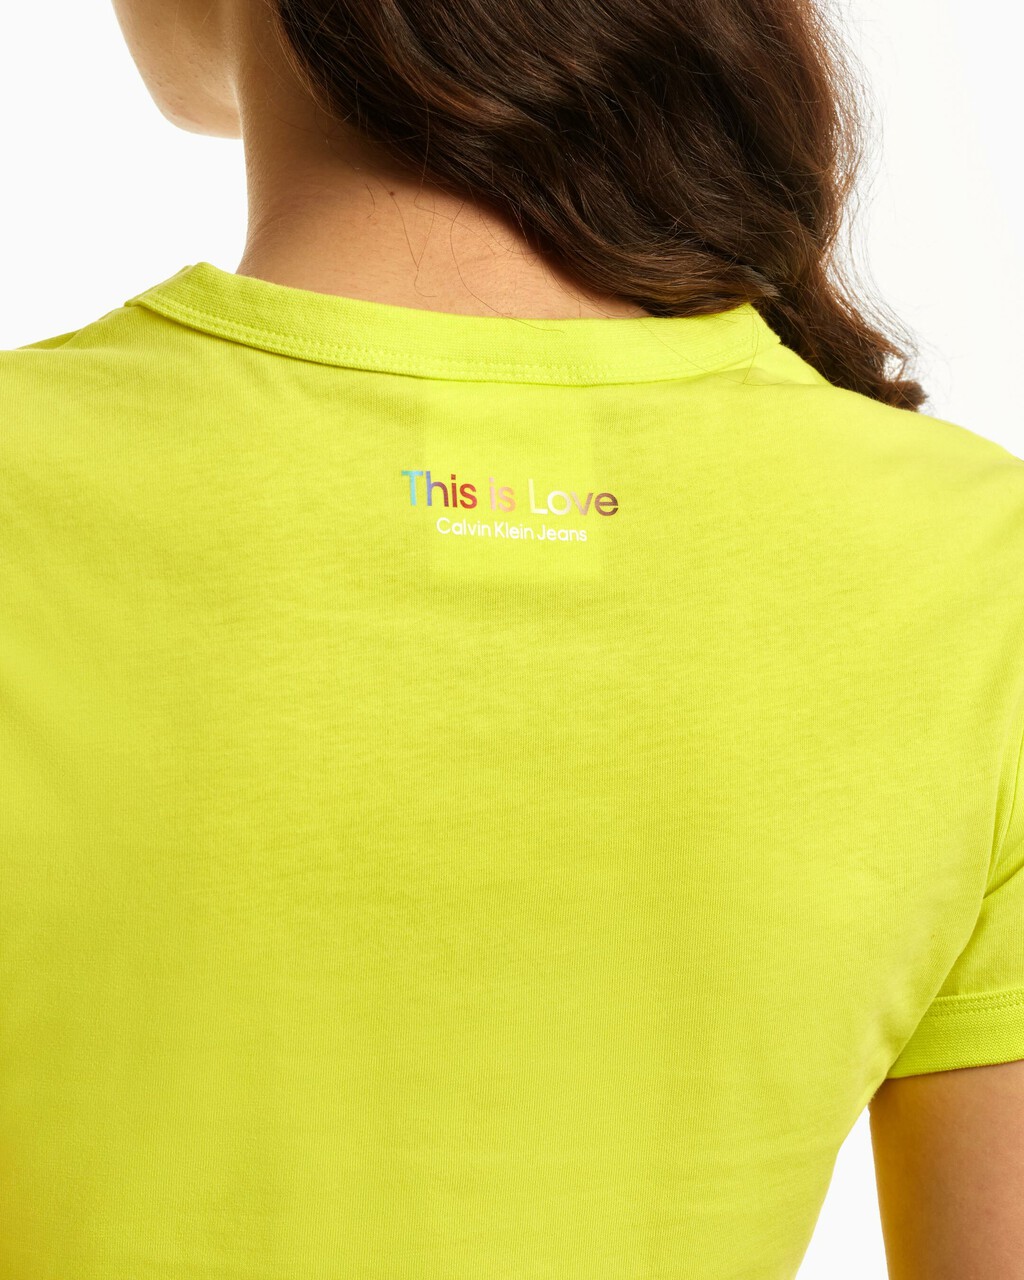 PRIDE LOGO 短版 T 恤, Acid Citrus, hi-res